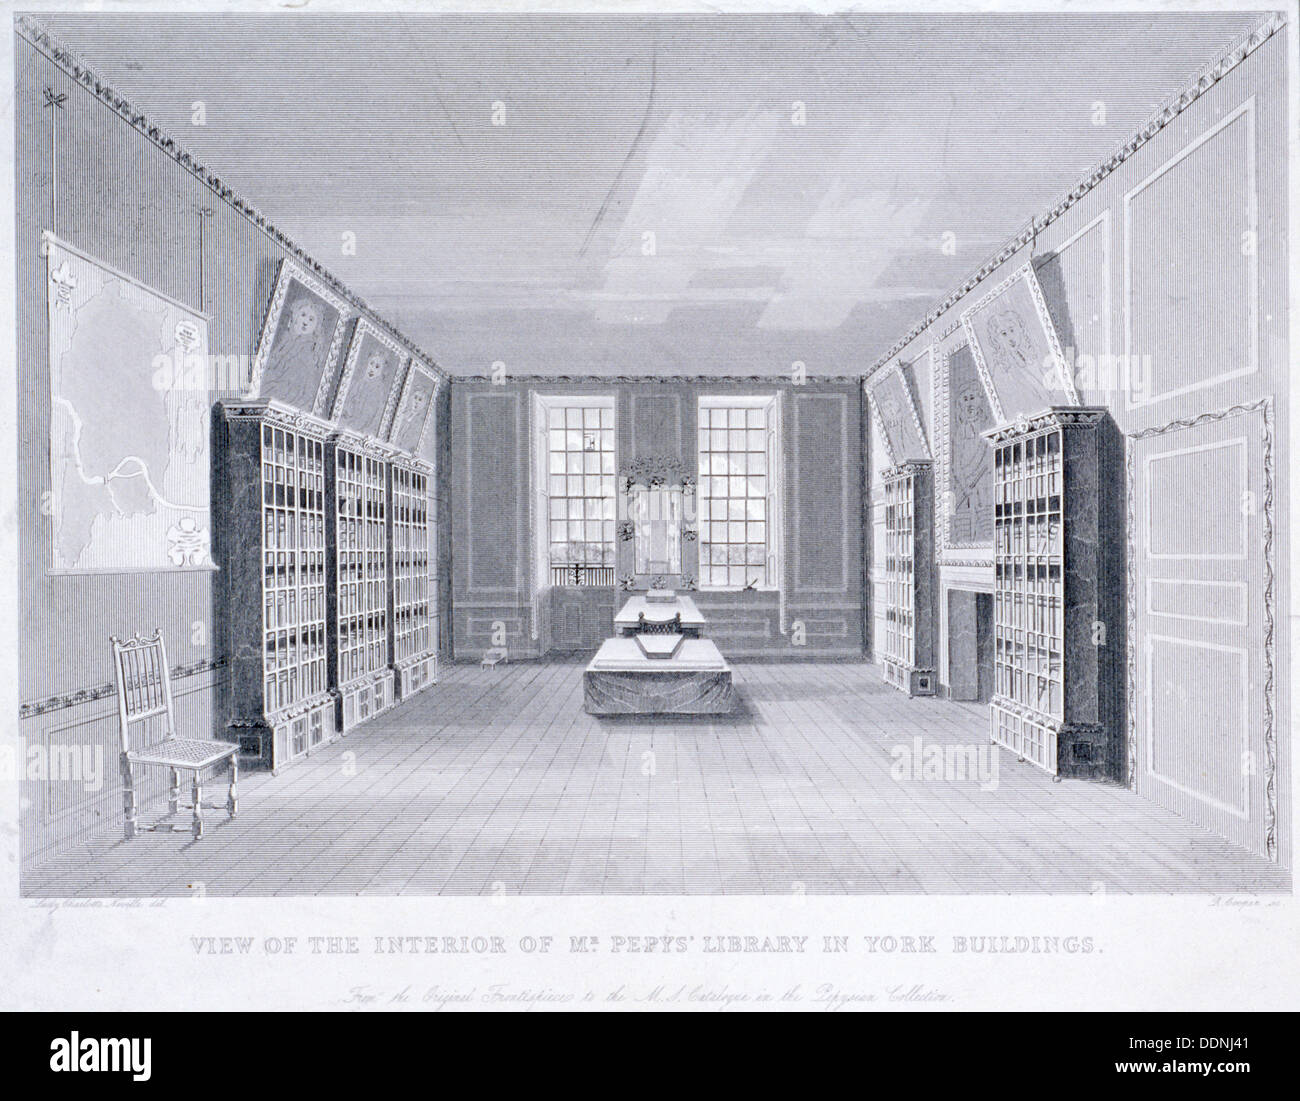 Innenansicht der Herr Pepys Library in York Gebäude, Westminster, London, c1670. Künstler: R Cooper Stockfoto